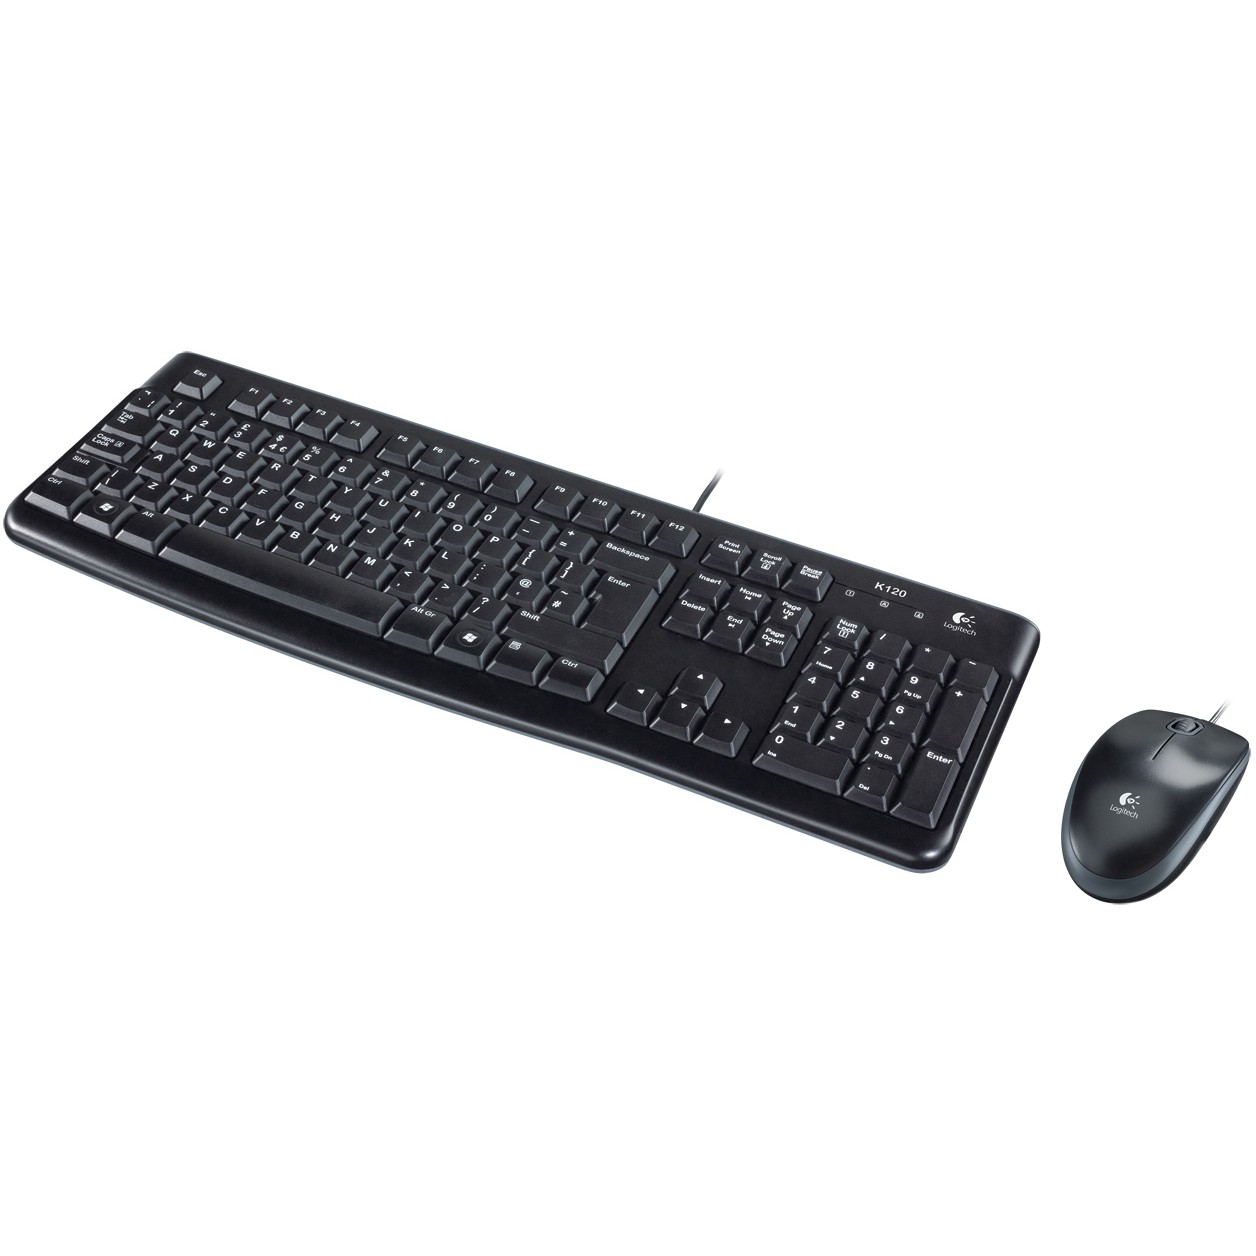 Logitech Desktop MK120 keyboard